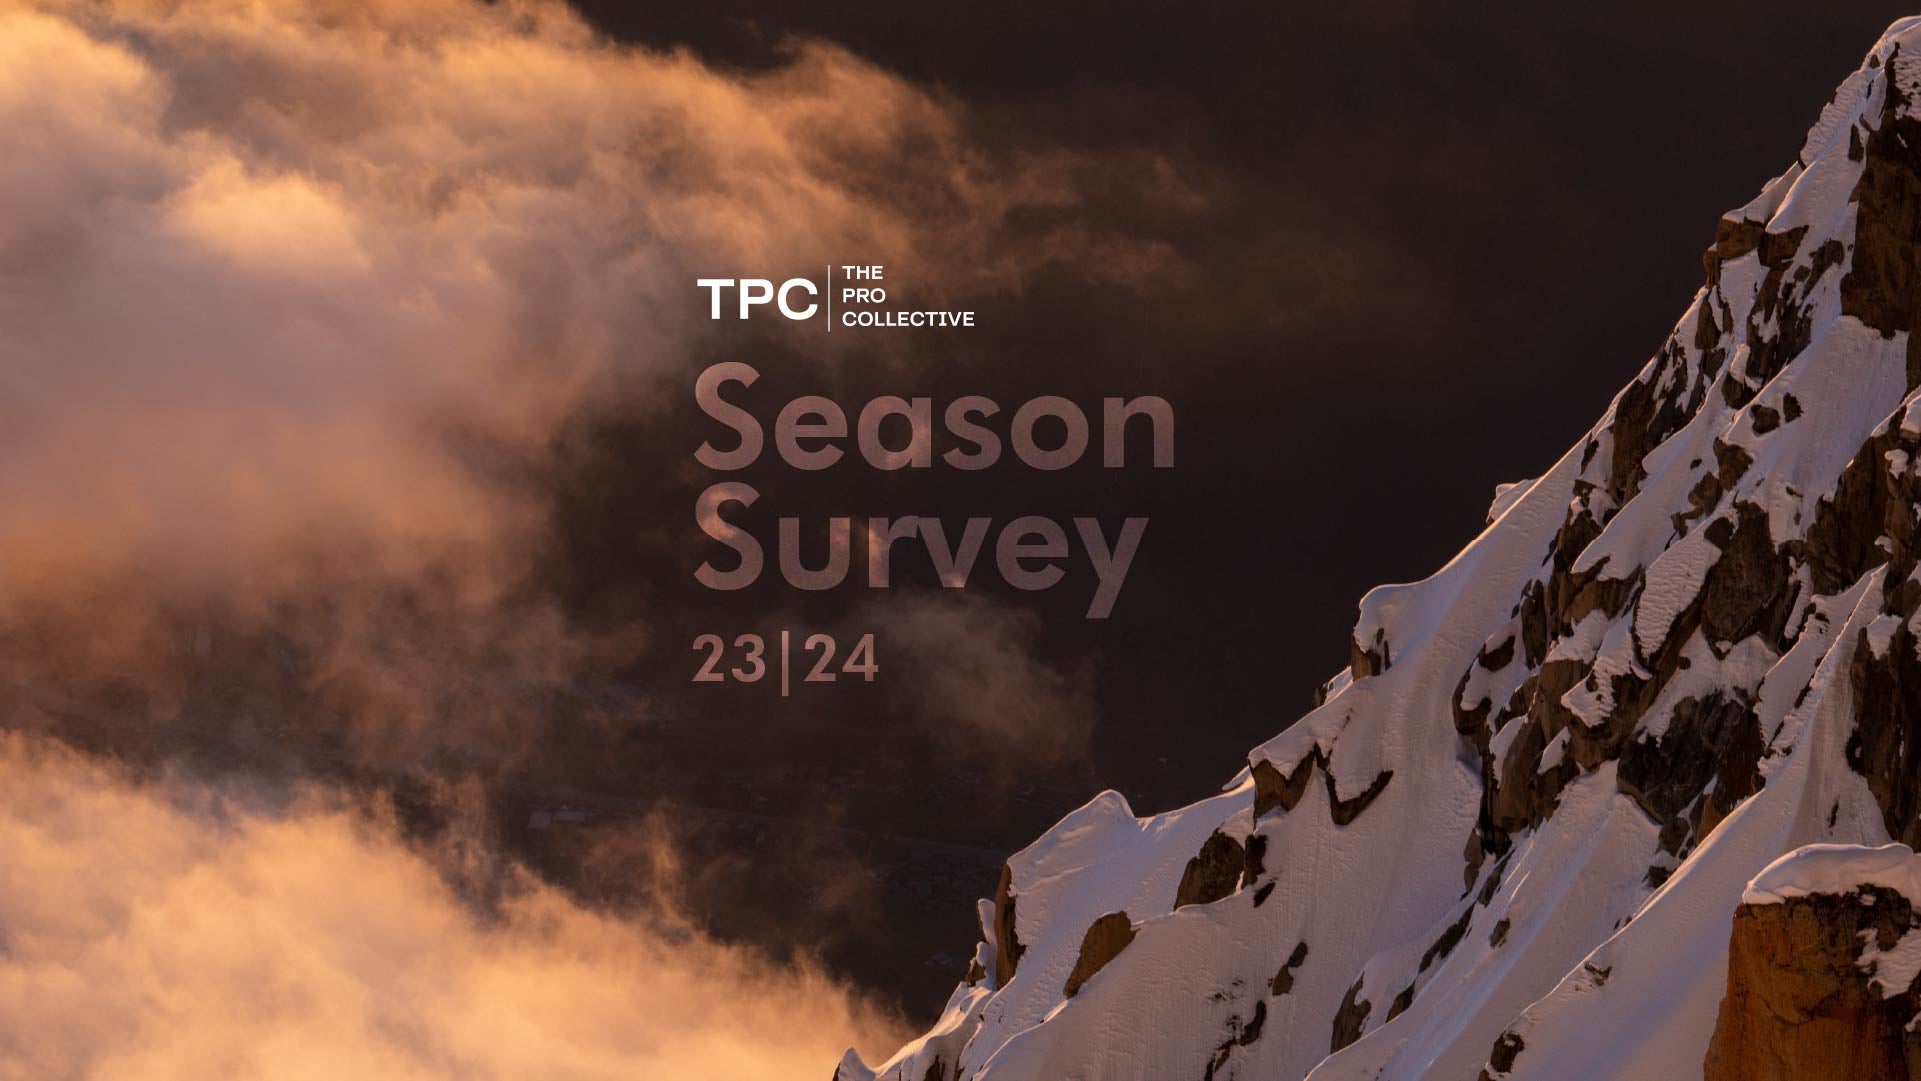 TPC Season Survey 23|24